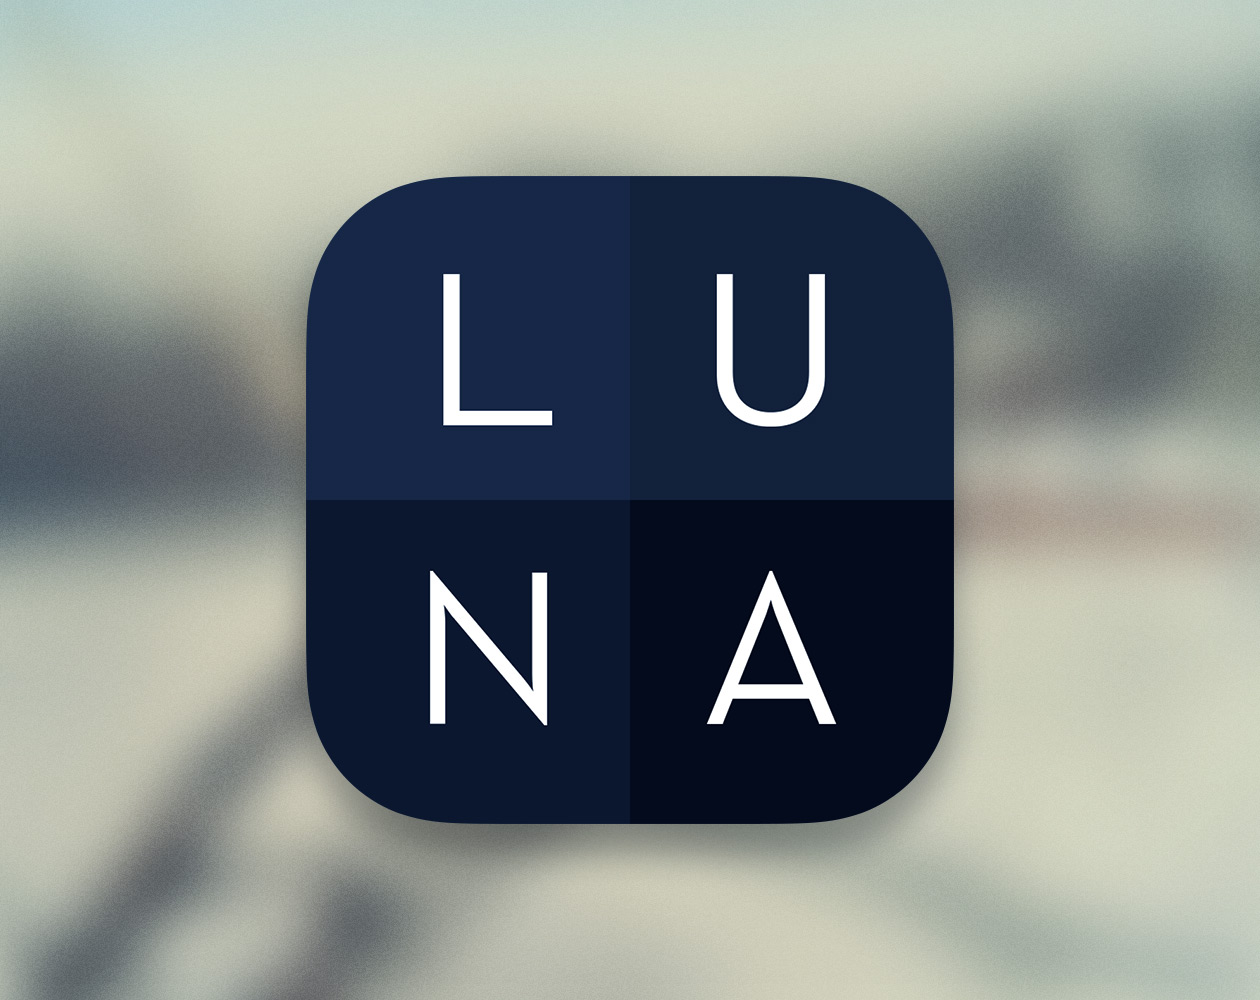 Калькулятор LUNA для iPhone поможет быстро подсчитать любые расходы